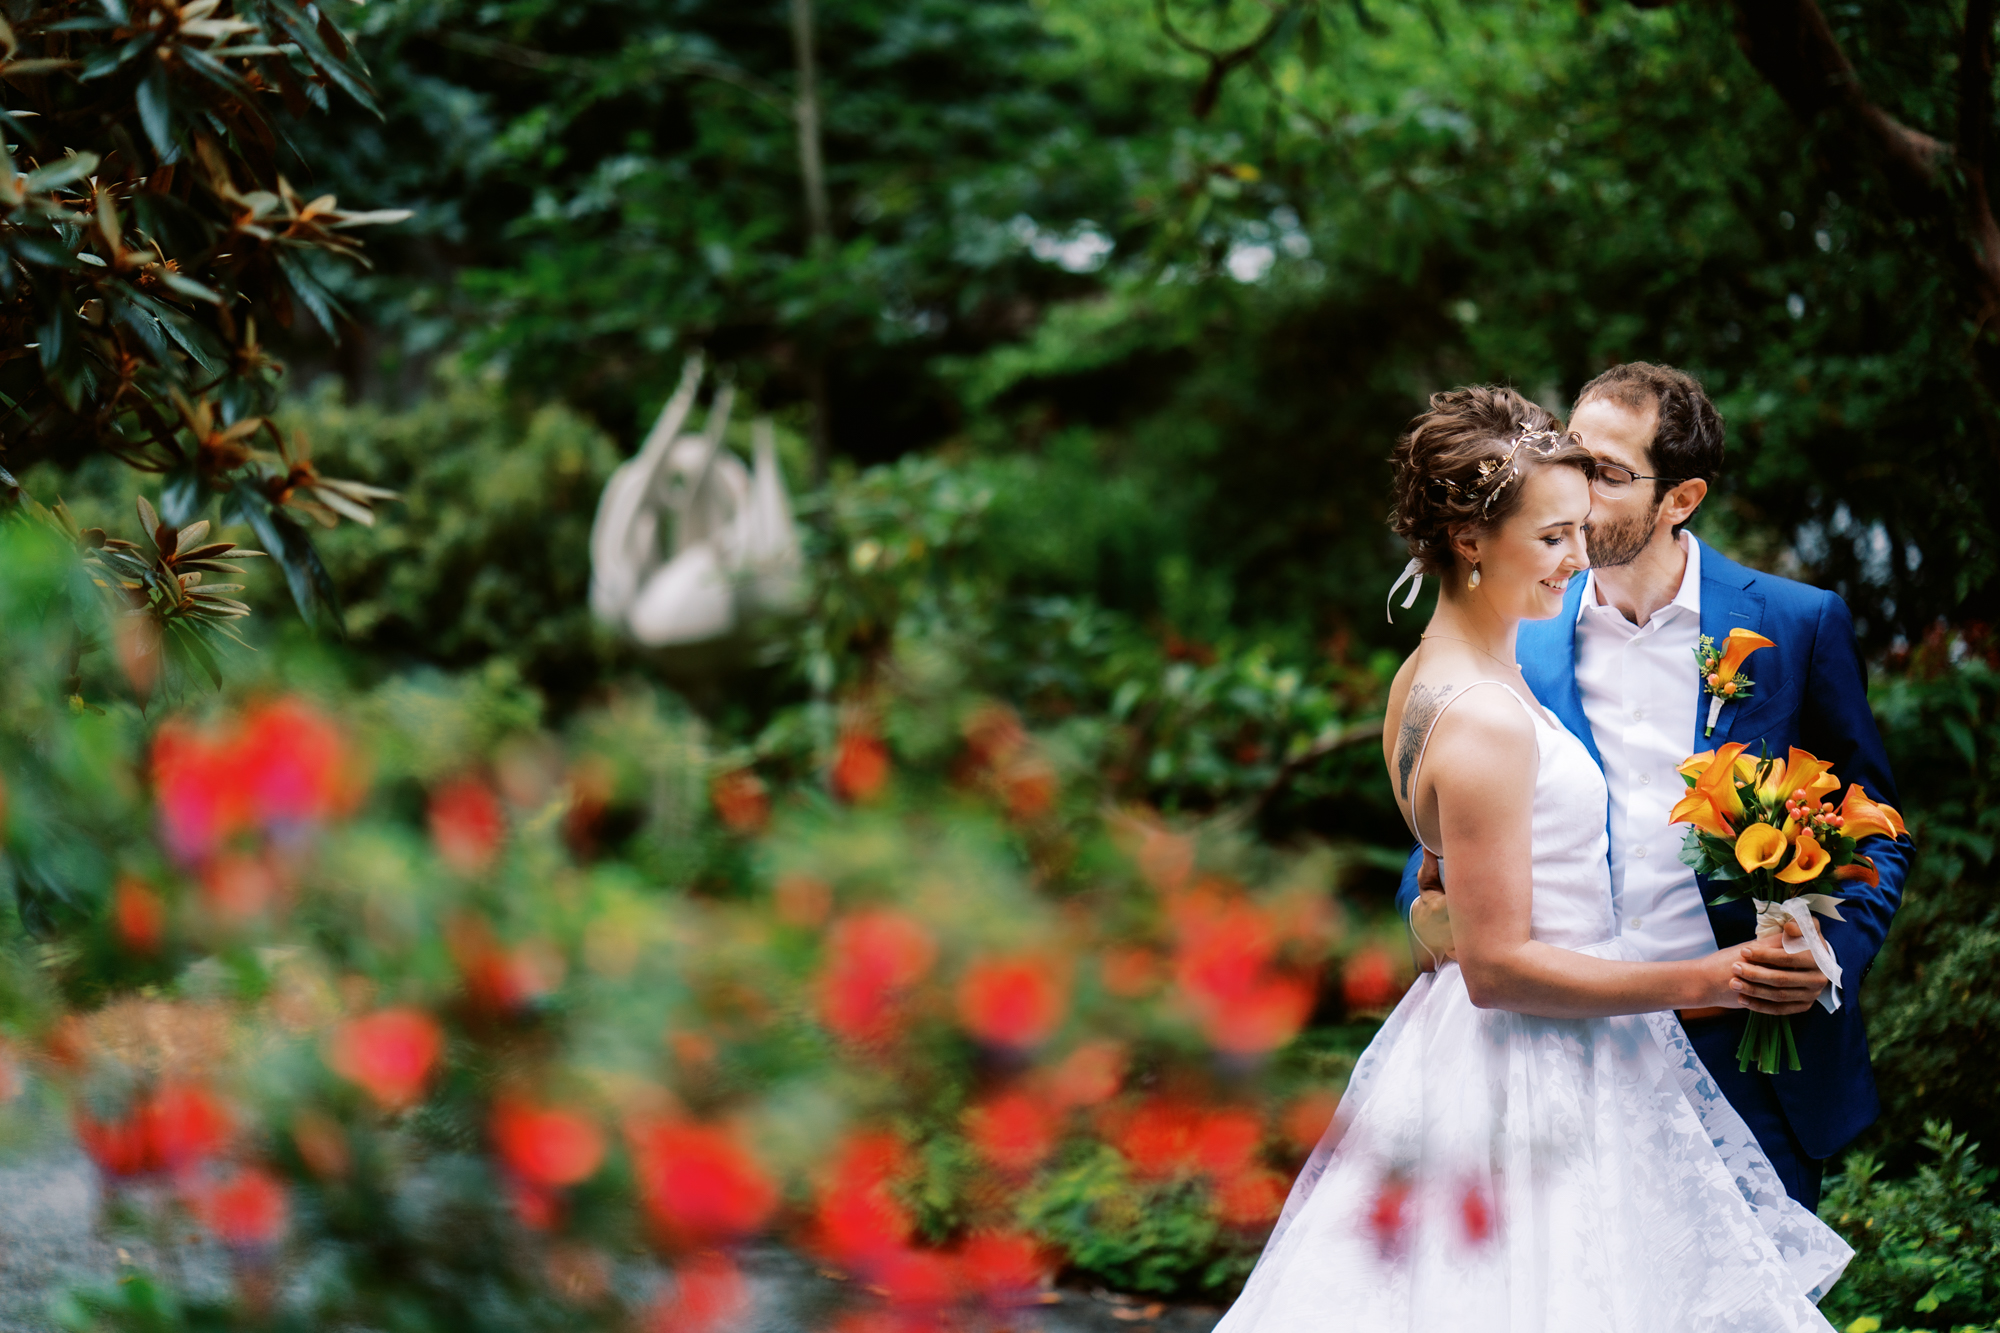 Dunn Gardens Wedding: Bridal Portraits in the garden